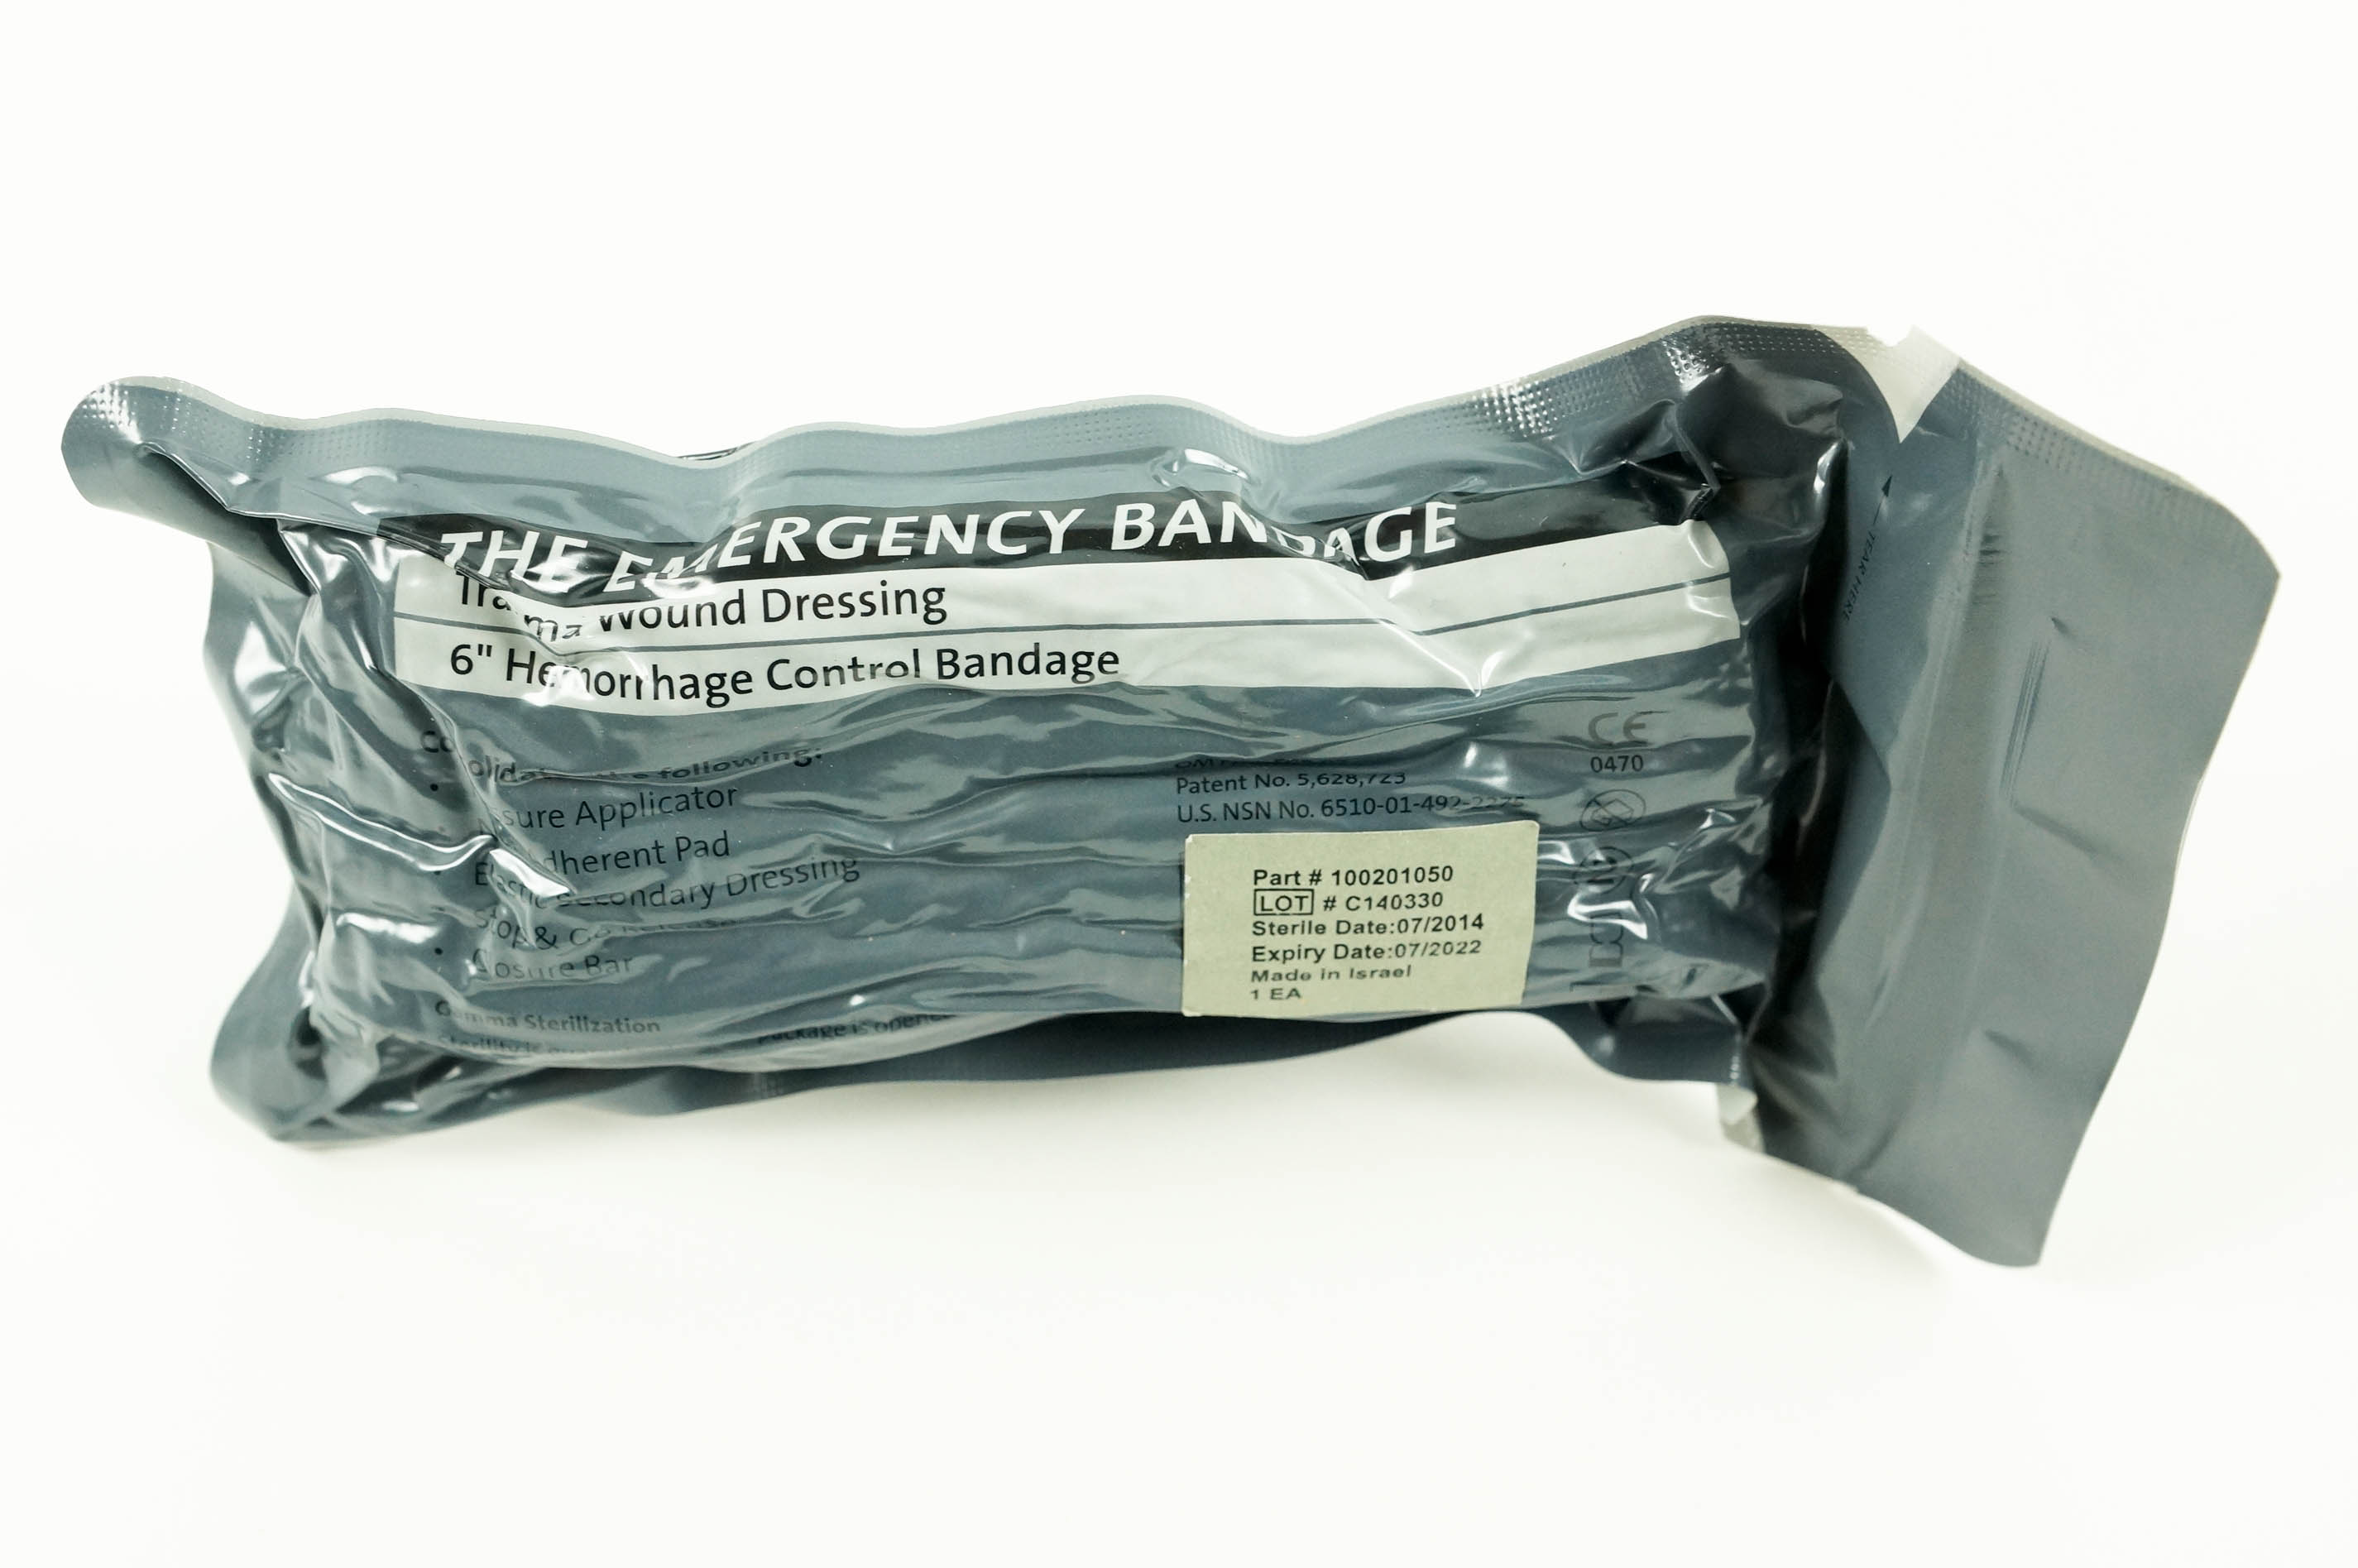 Israeli Bandage - Emergency Bandage with Pressure Bar - 4 Inch, White